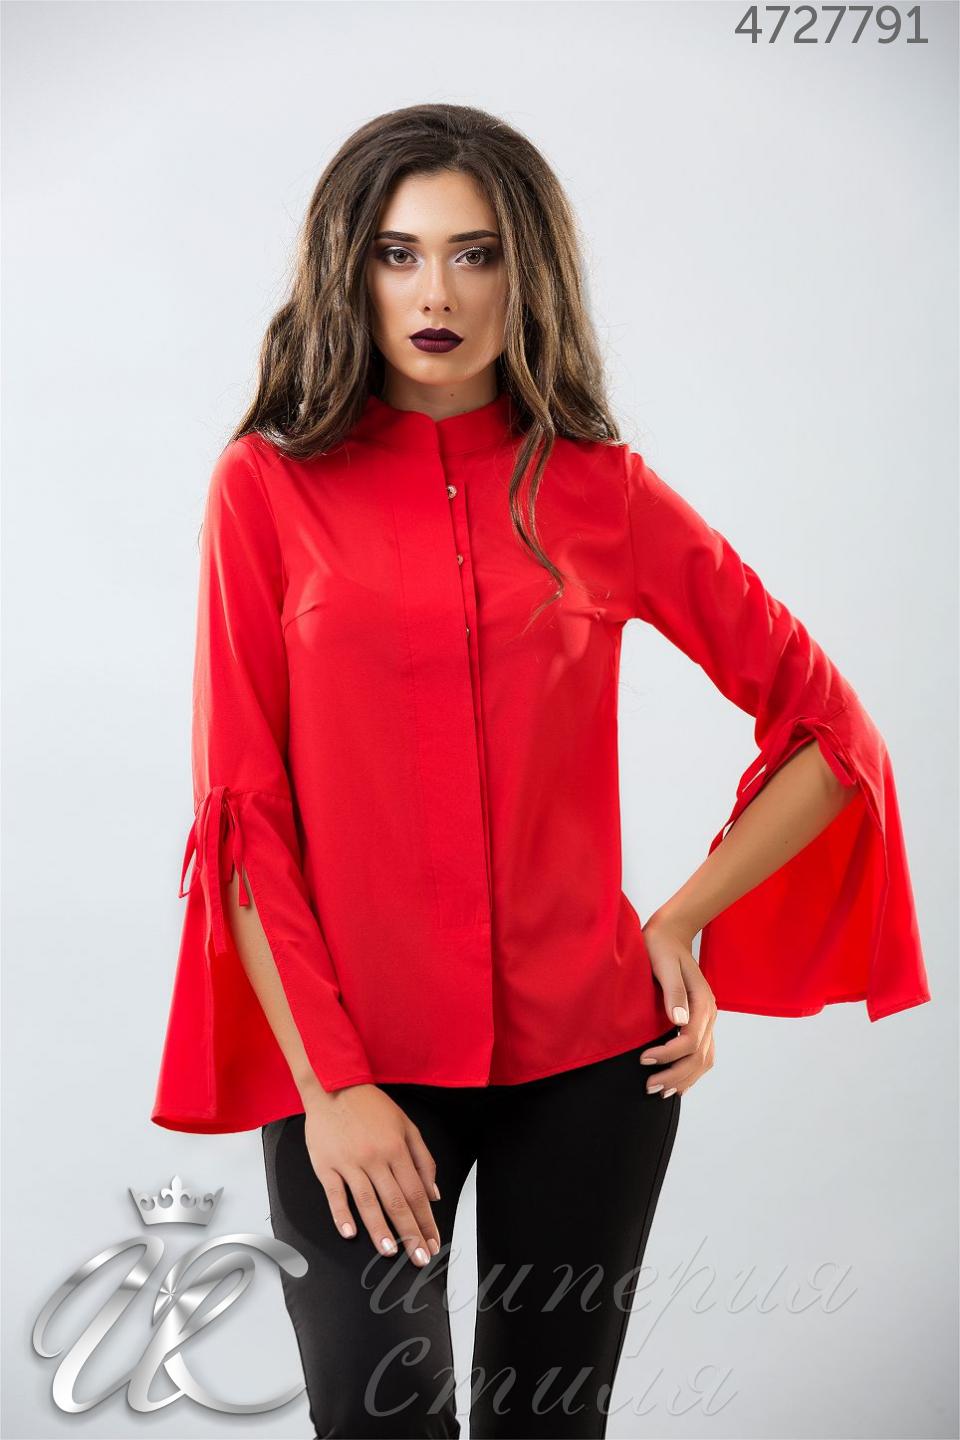 Красные блузки женская. Красная блуза. Модная красная блузка. Красивые красные женские блузки. Модные красные блузы.